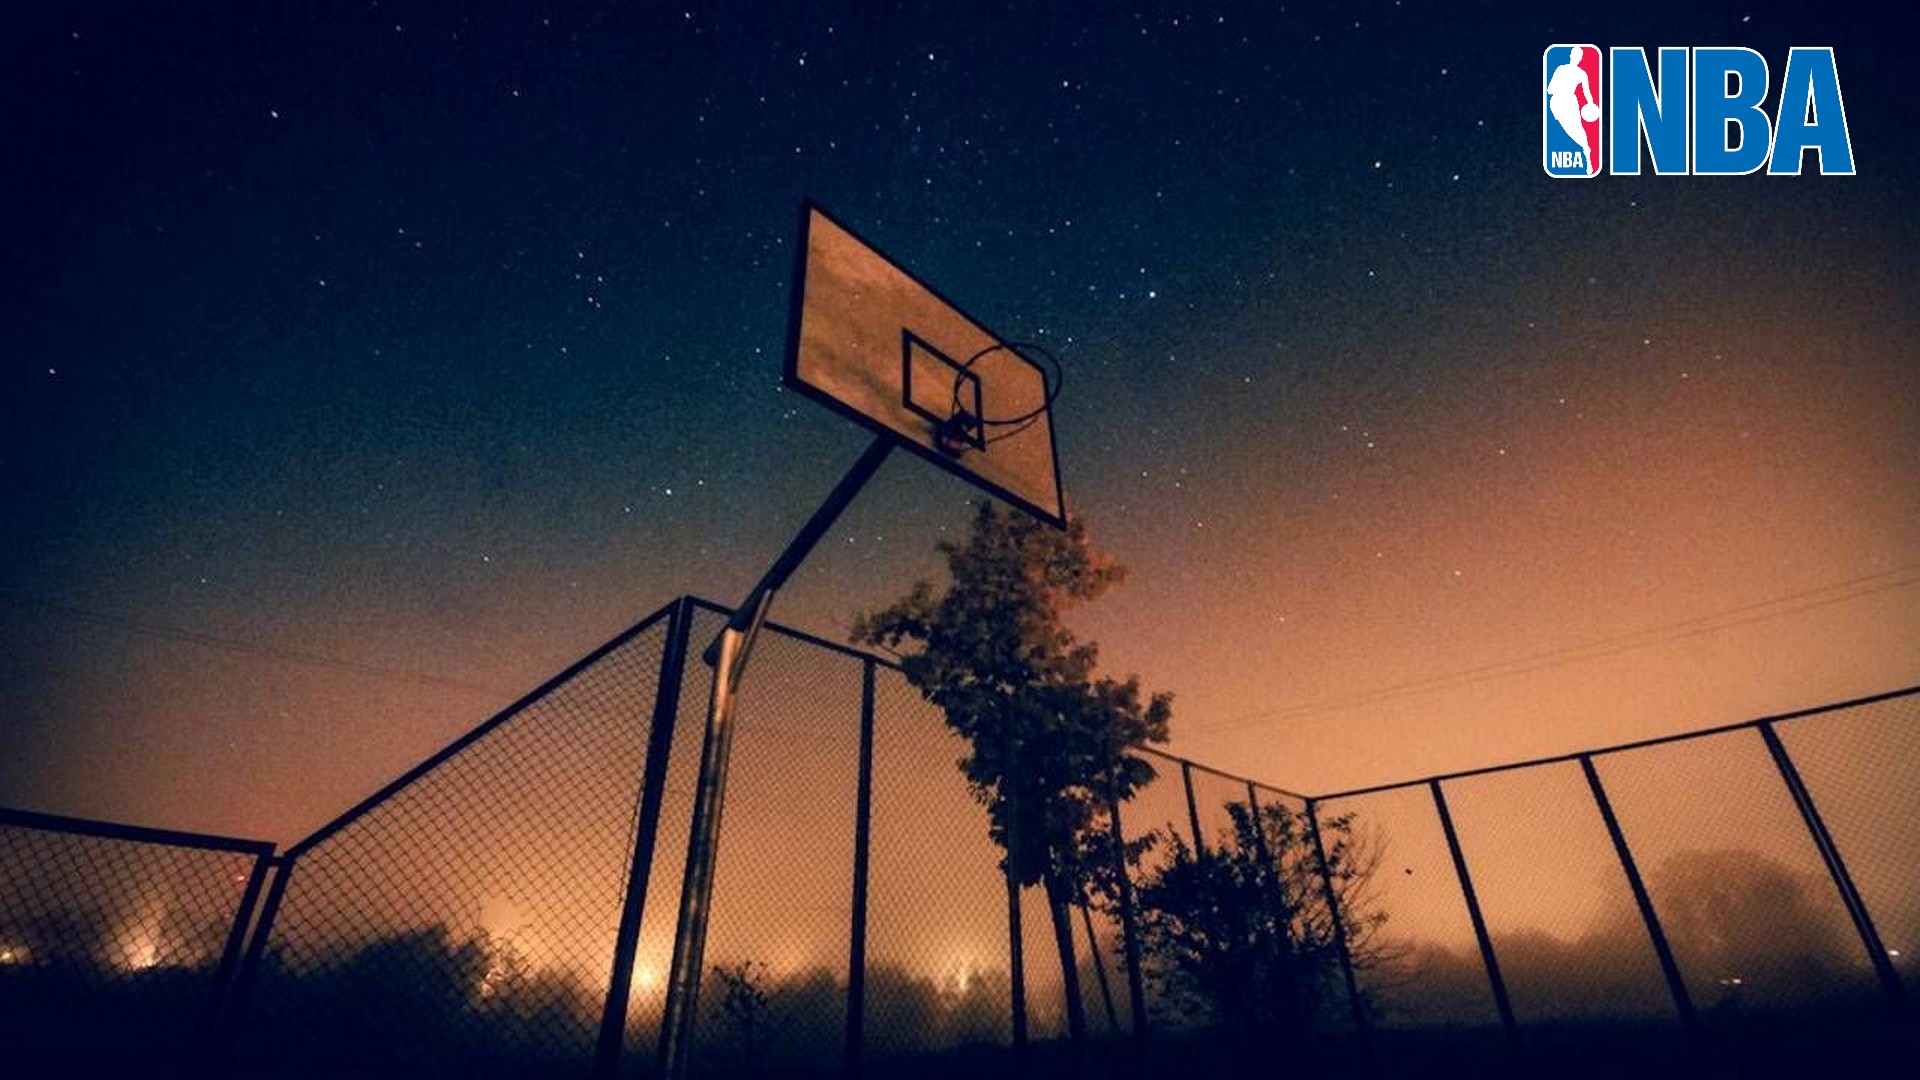 バスケットボールの壁紙,空,バスケットボールのコート,バスケットボール,夜,雲